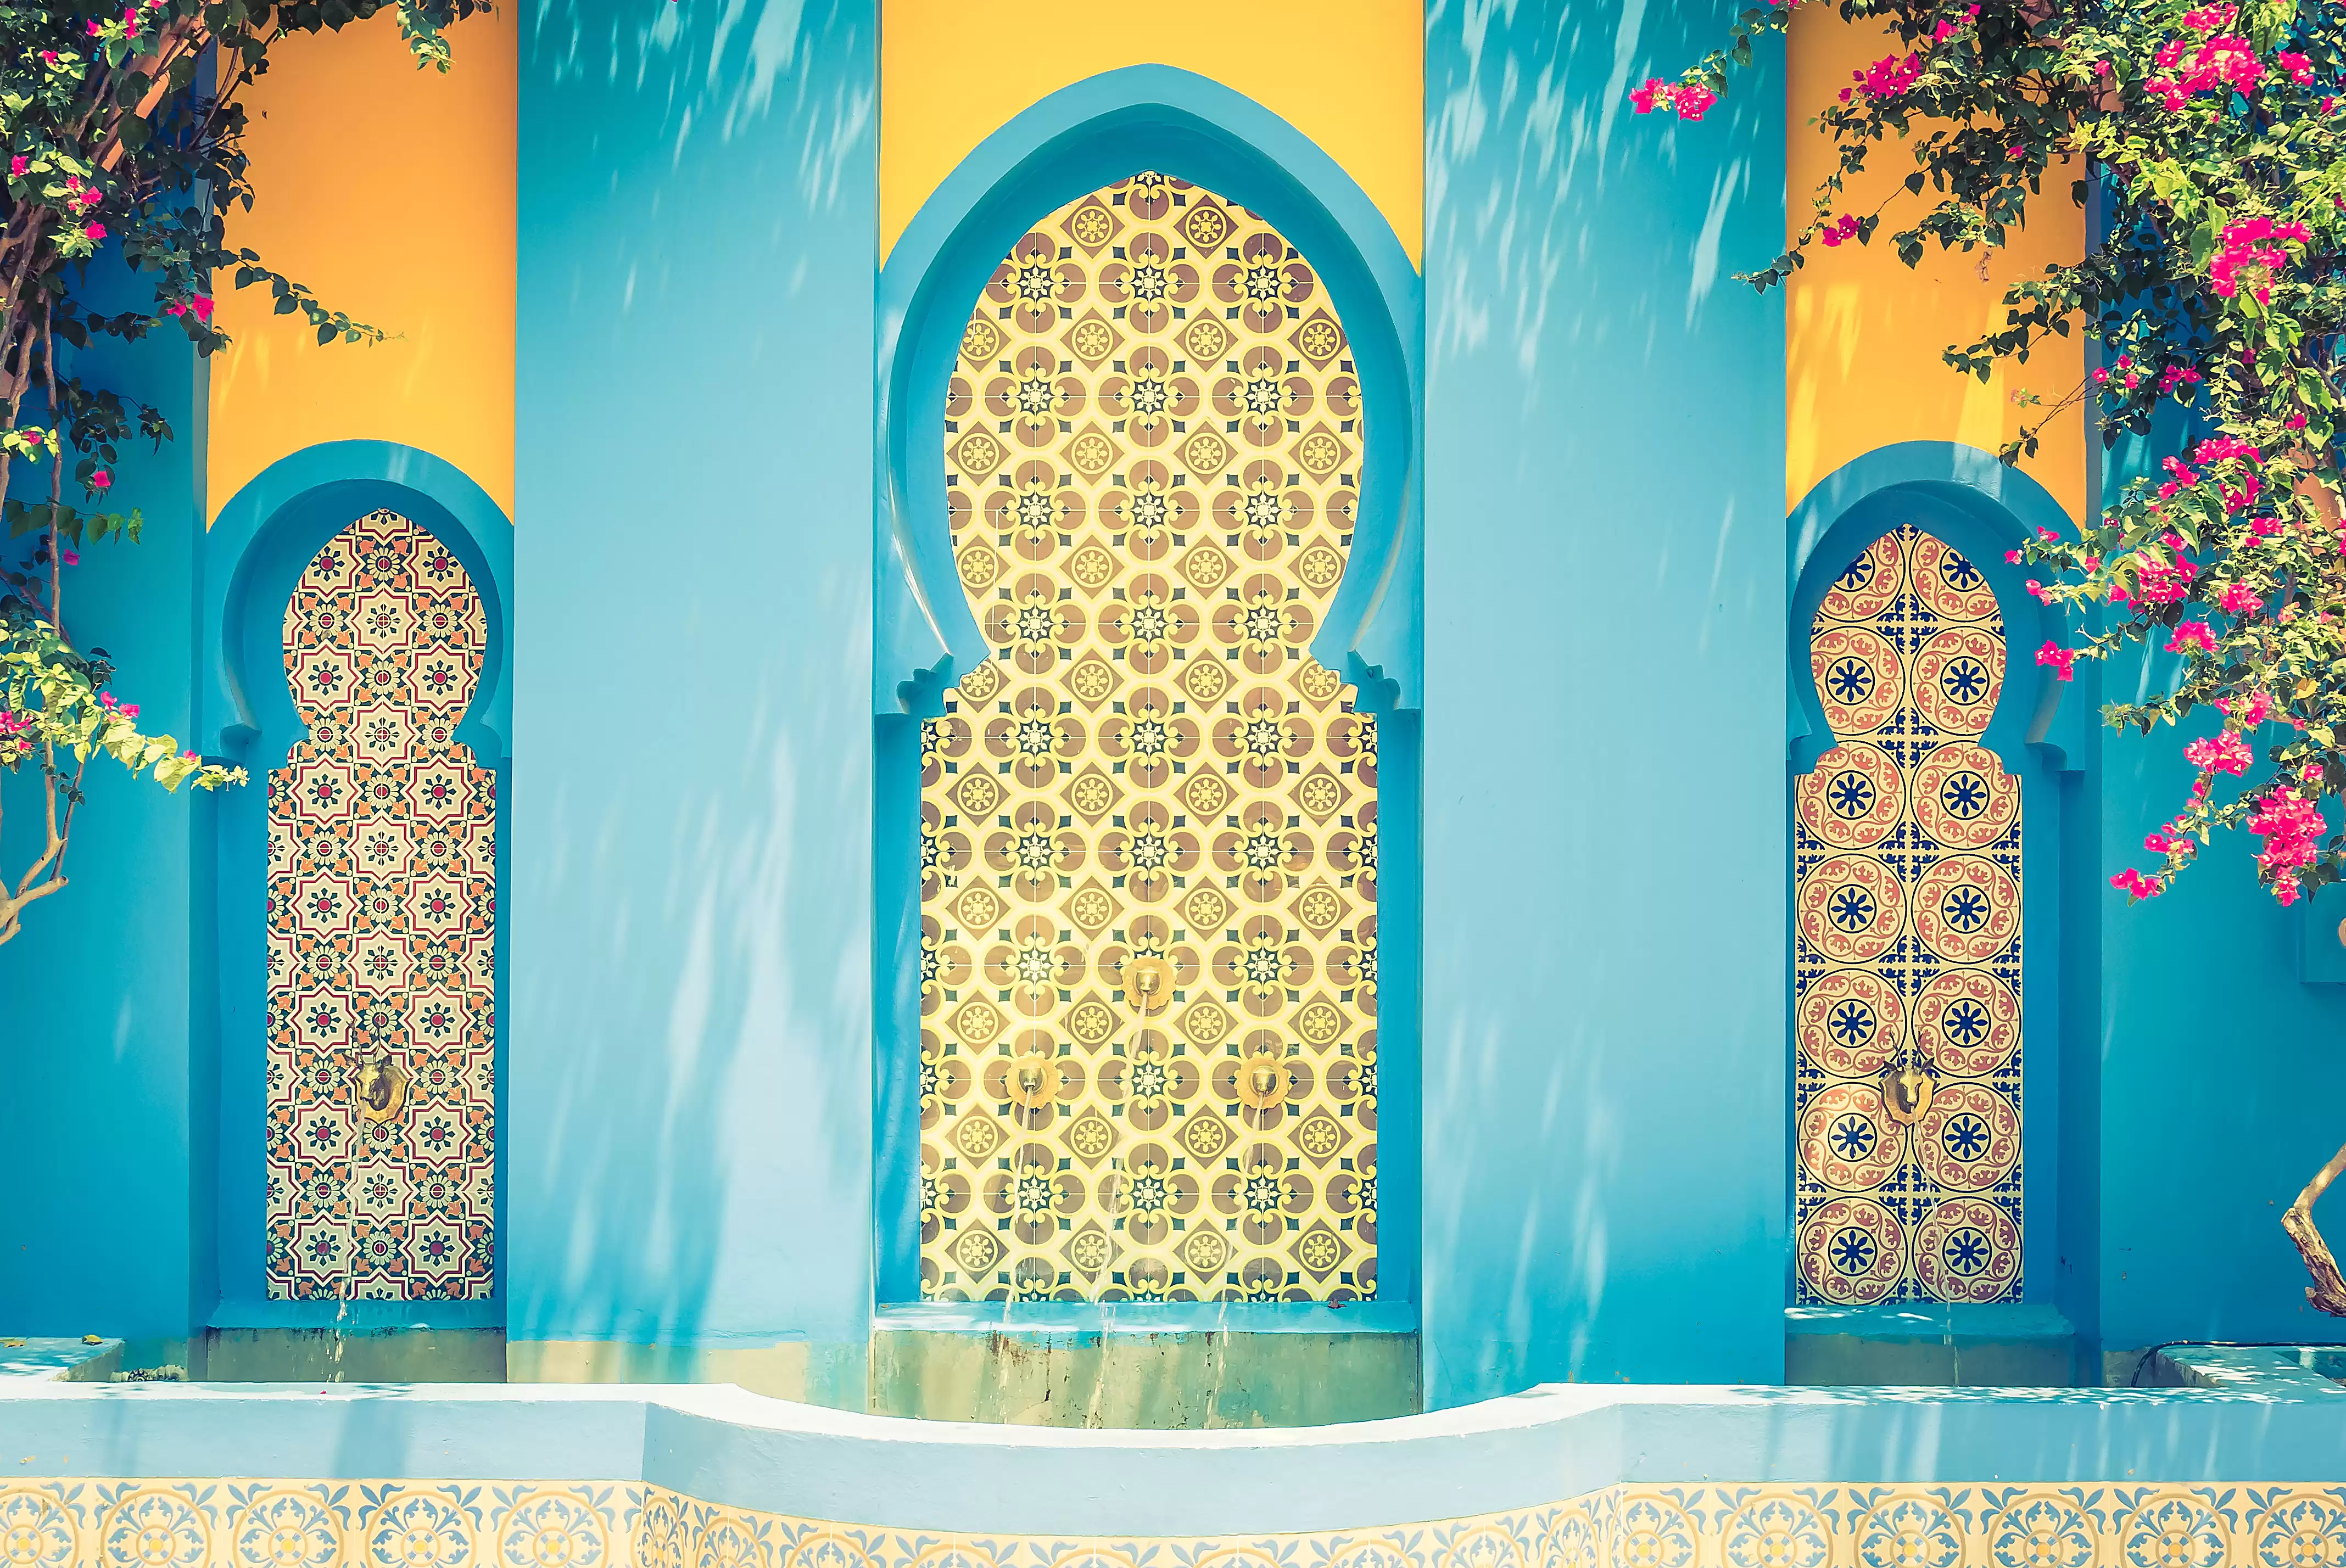 Sconfiggere il caldo: la vostra guida ai viaggi estivi nell'affascinante Marrakech